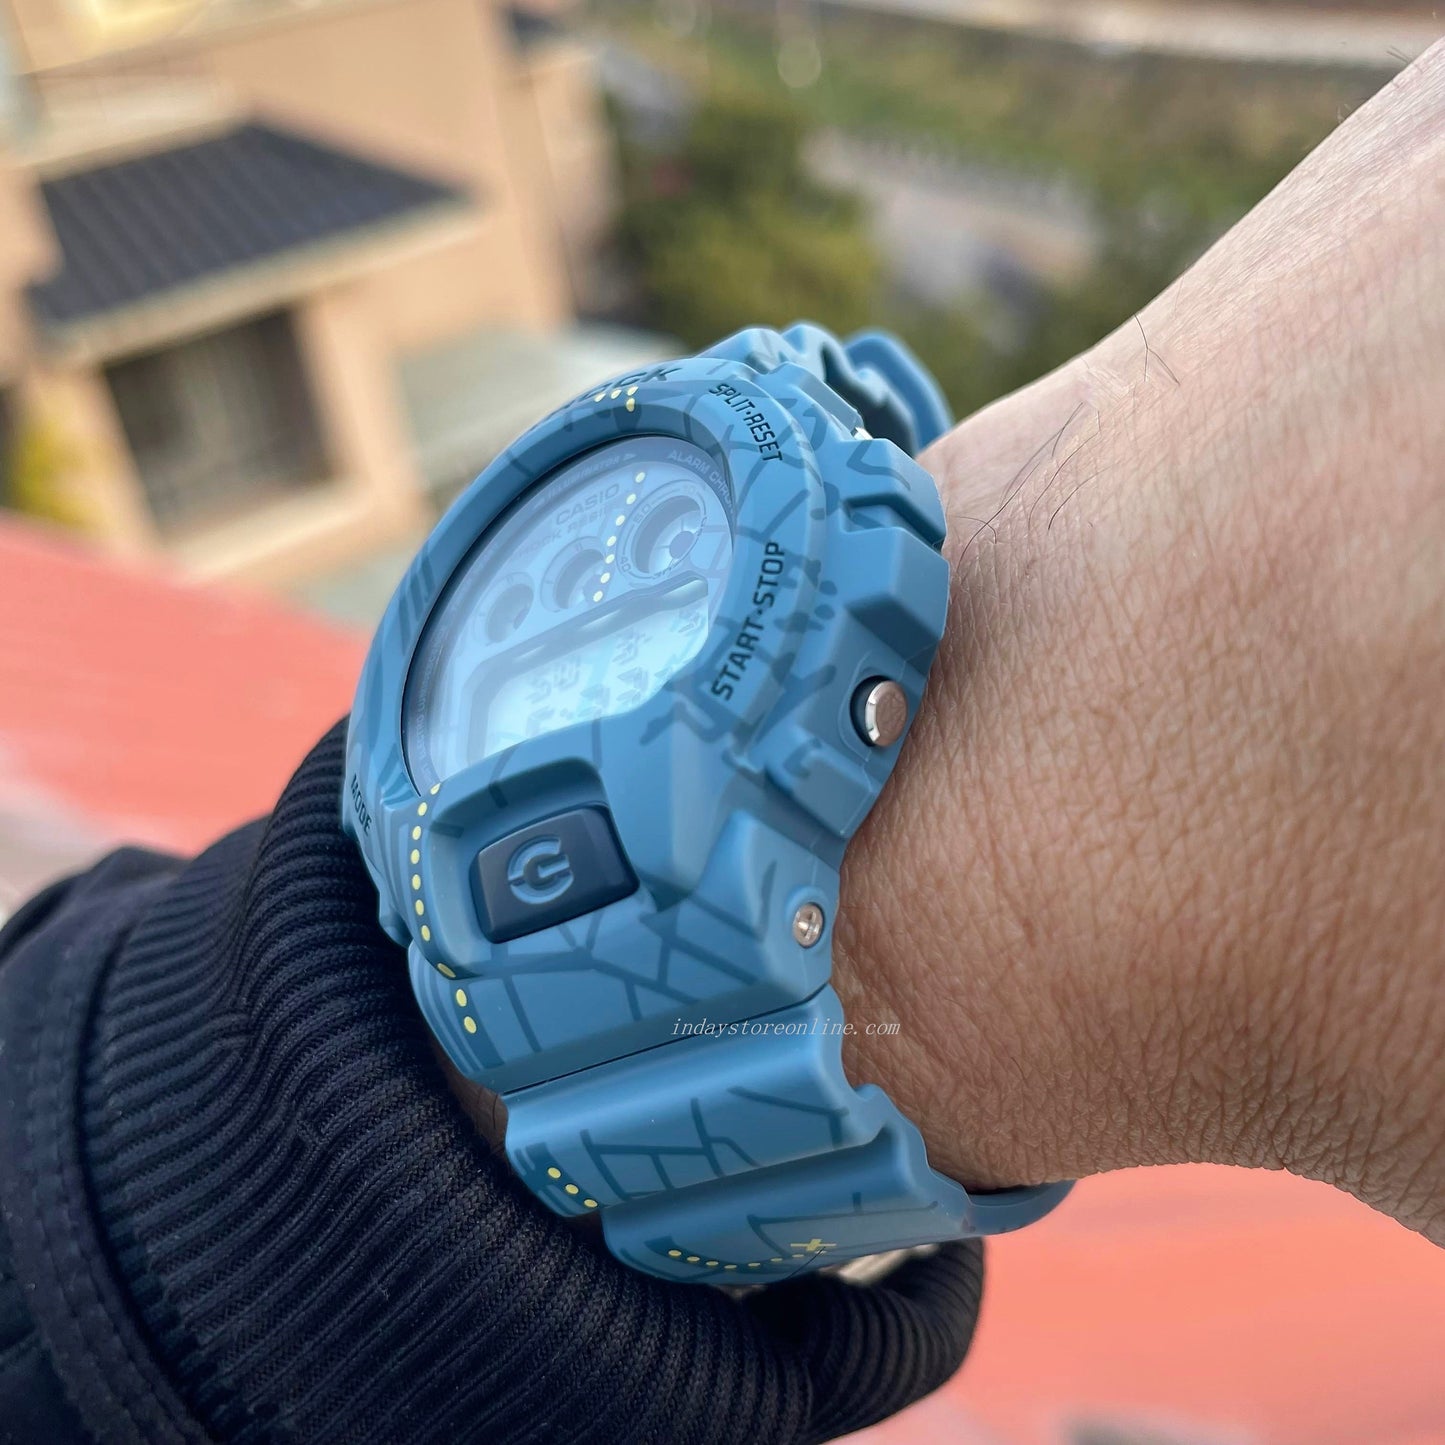 Casio G-Shock Men's Watch DW-6900SBY-2 Digital 6900 Series Treasure Hunt Watches Third-Eye Design